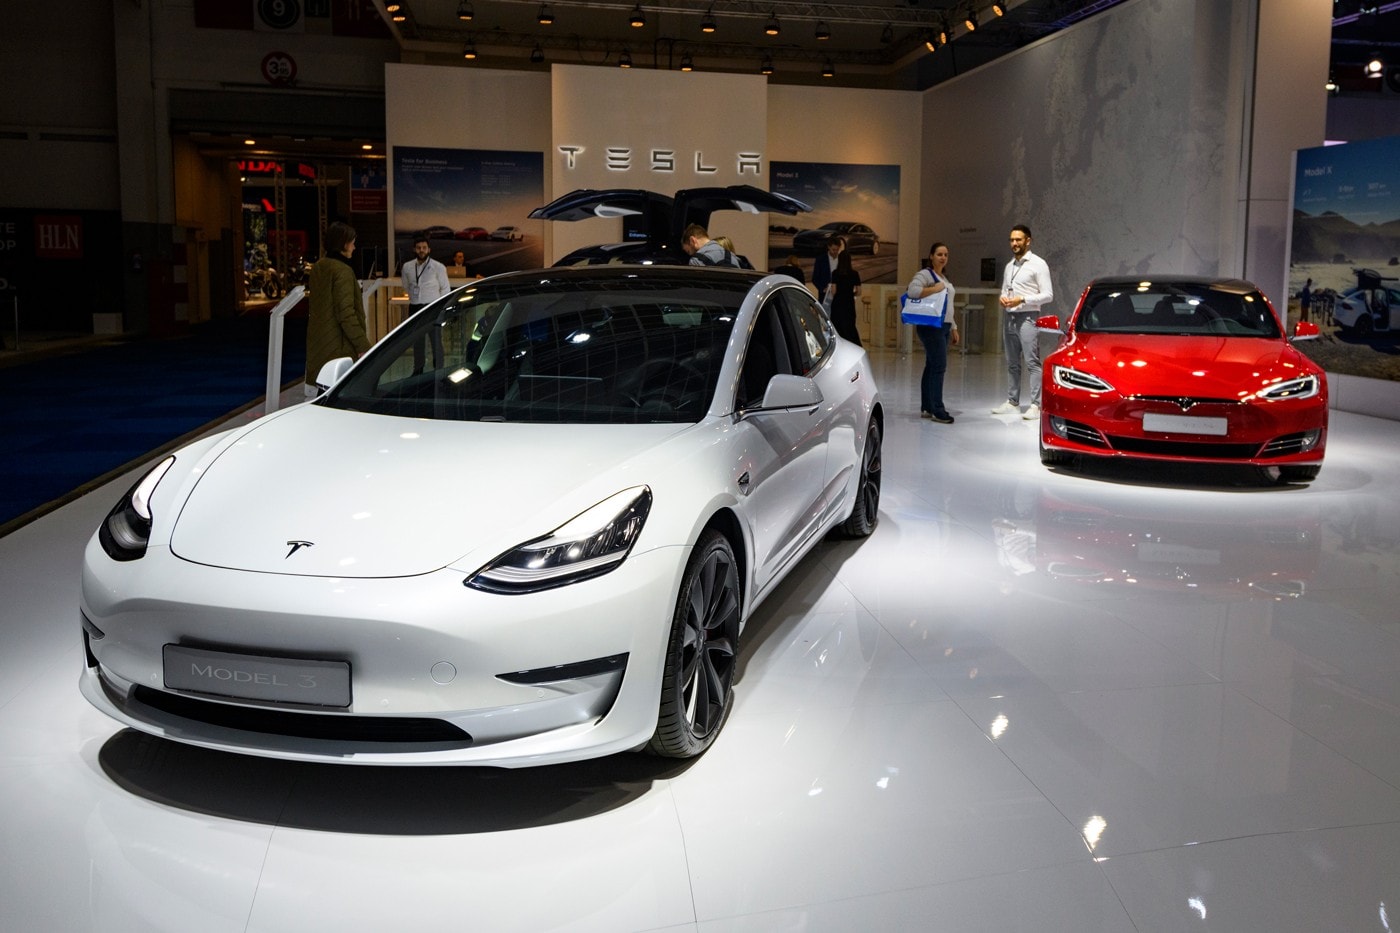 テスラ モデル 3 Tesla Model 3 が2020年第1四半期にアメリカで最も売れた“高級車”に Tesla Model 3 Best Selling Luxury Car in USA Q1 News  alameda Nevada Texas lockdown cars EVS electric vehicles SpaceX